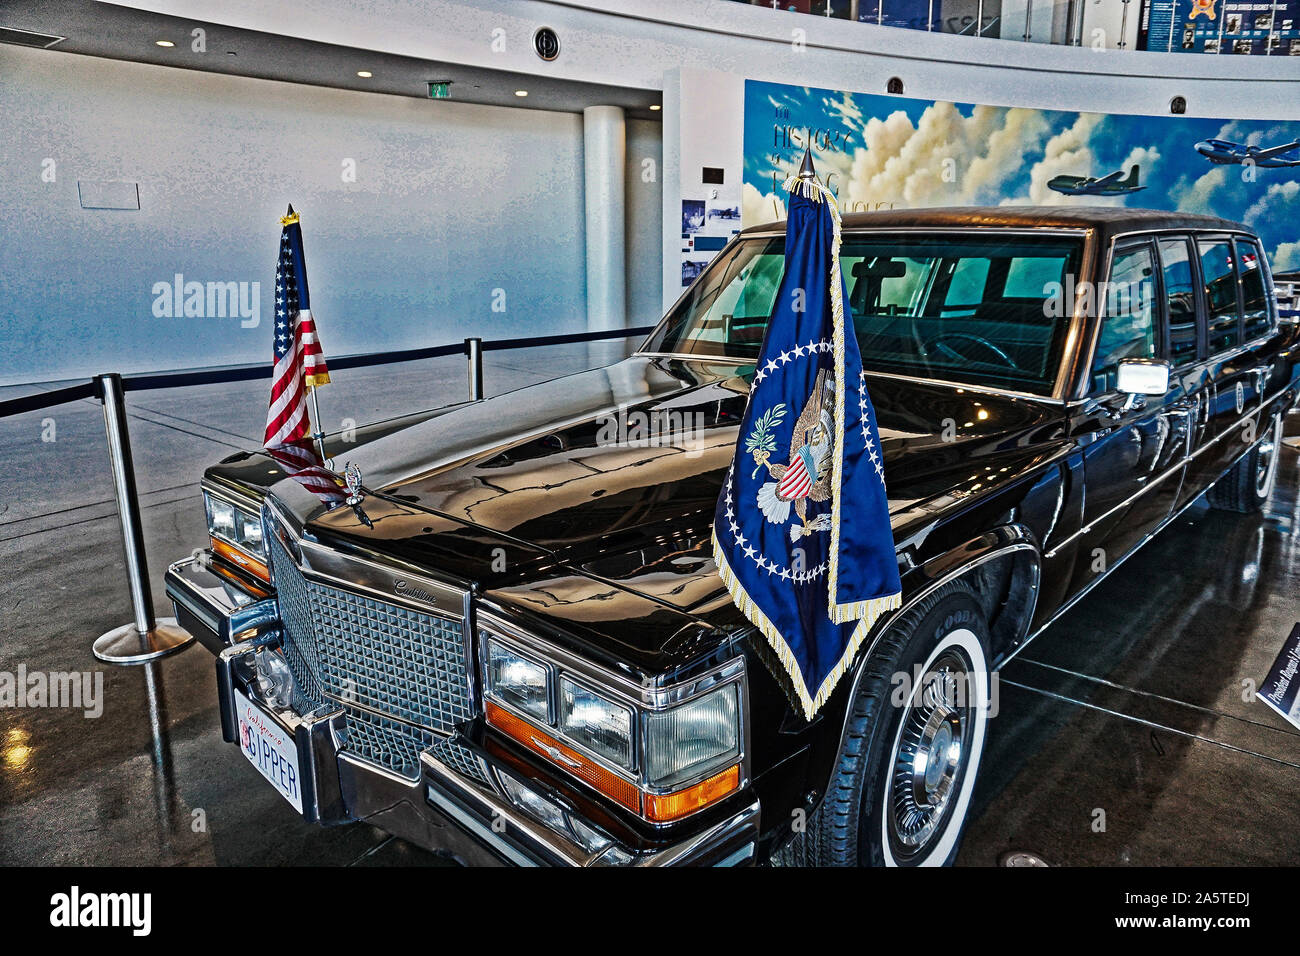 La limousine présidentielle à la Ronald Reagan Presidential Library à Simi Valley en Californie. Photo par Dennis Brack Banque D'Images